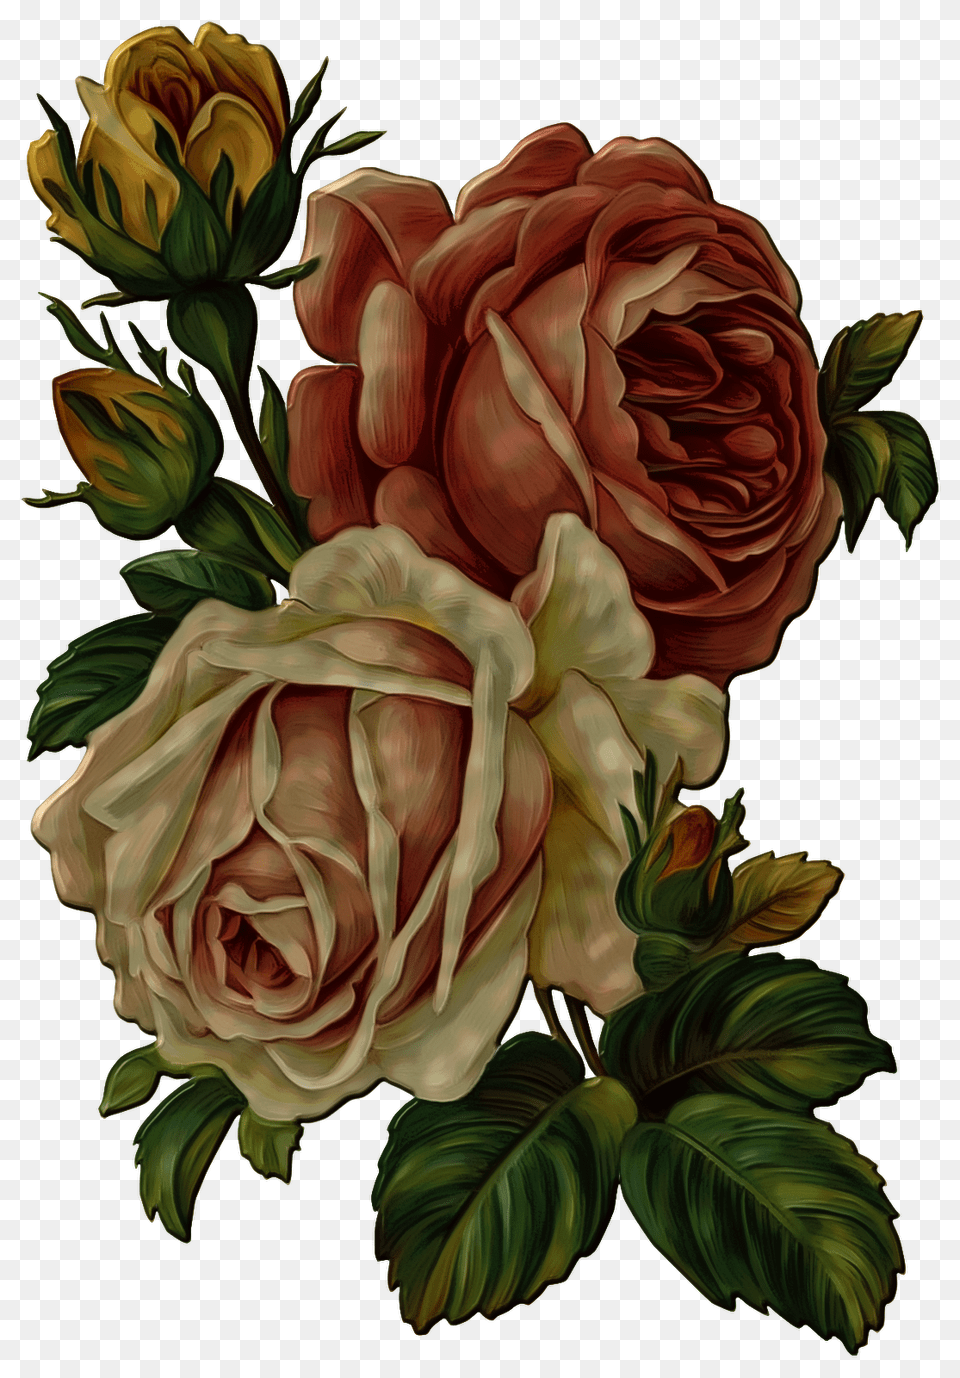 Vintage Rose Flower Vintage Flower, Art, Plant, Graphics, Floral Design Free Png